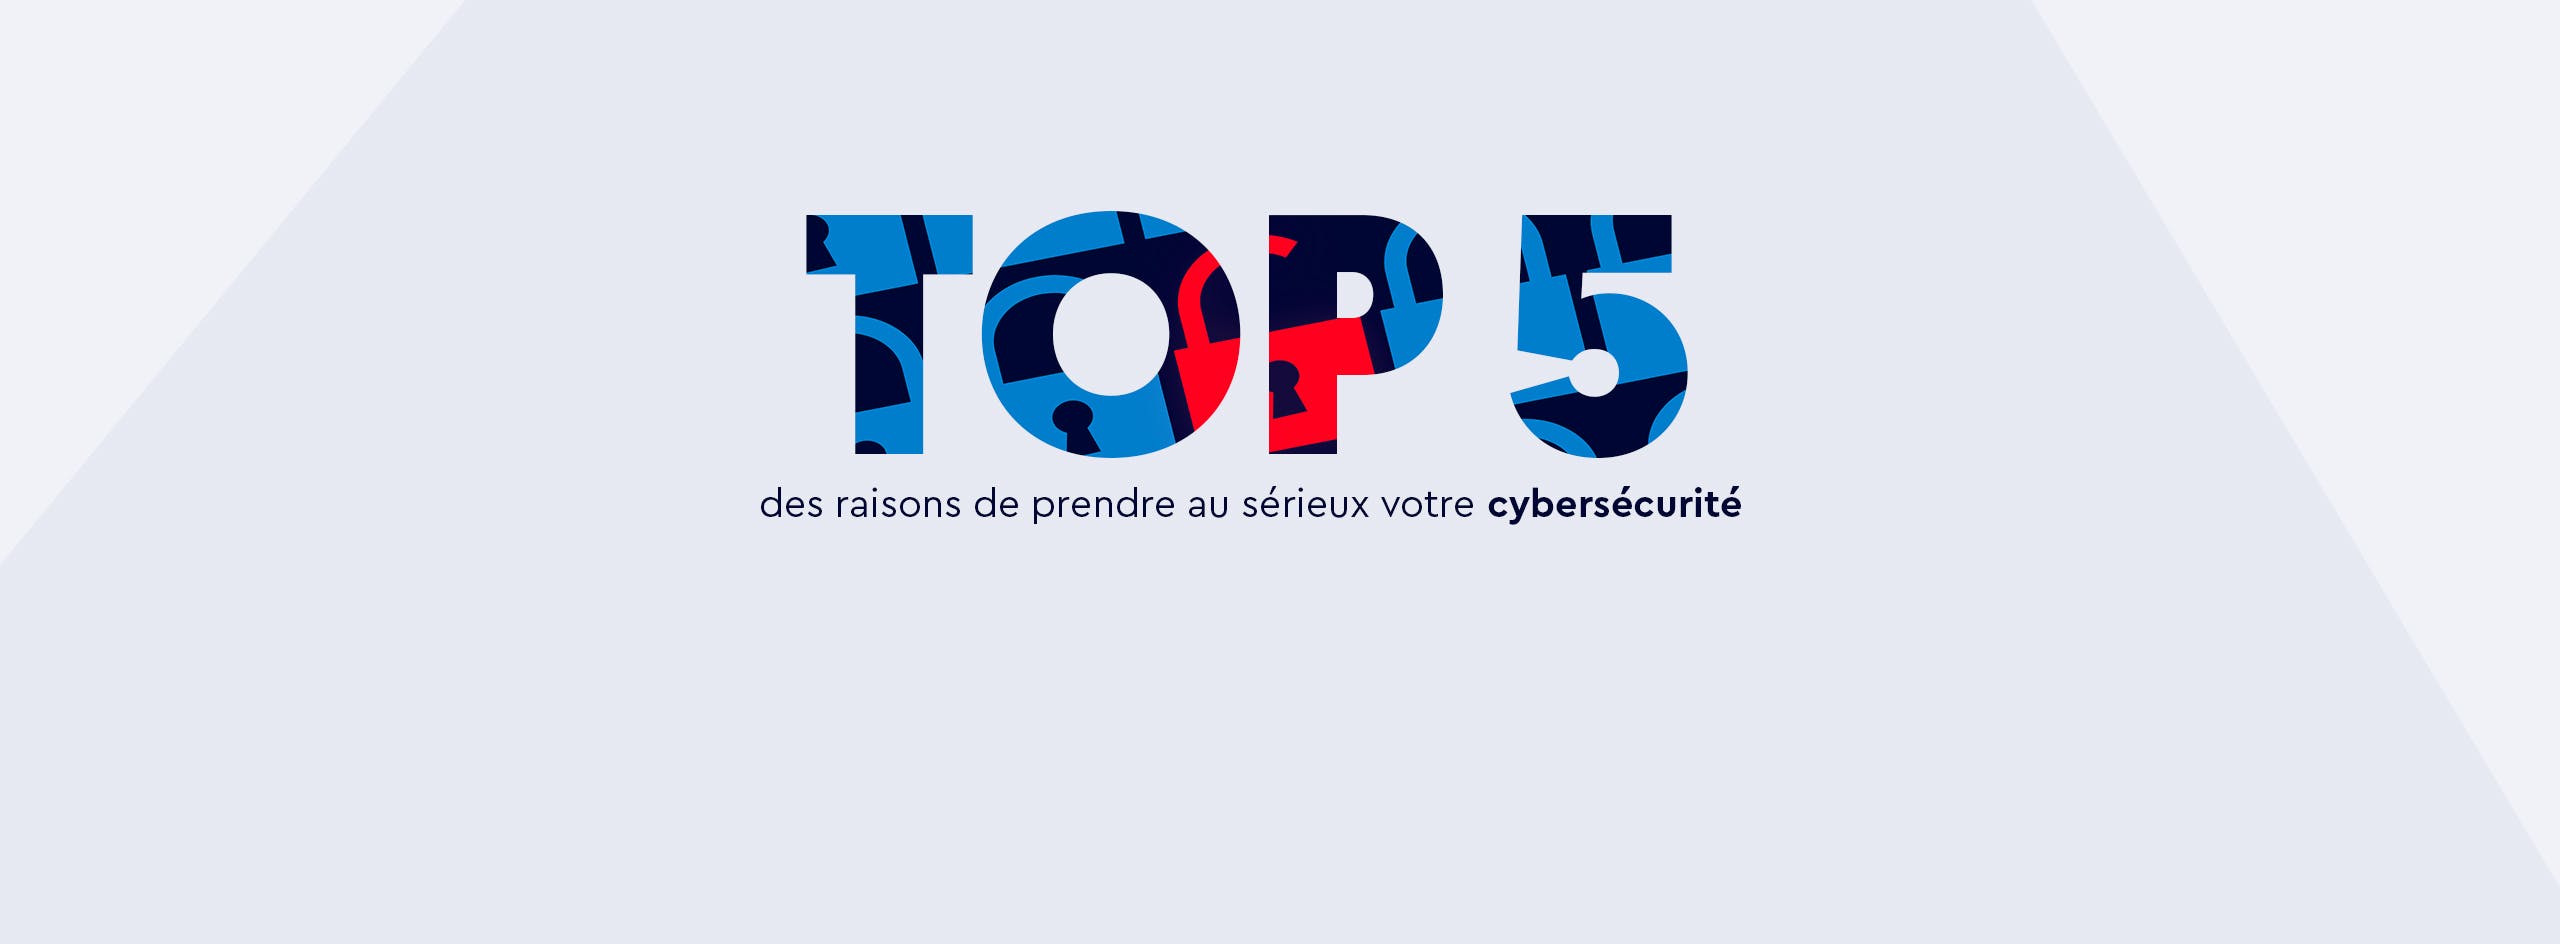 Top 5 des raisons de prendre au sérieux votre cybersécurité